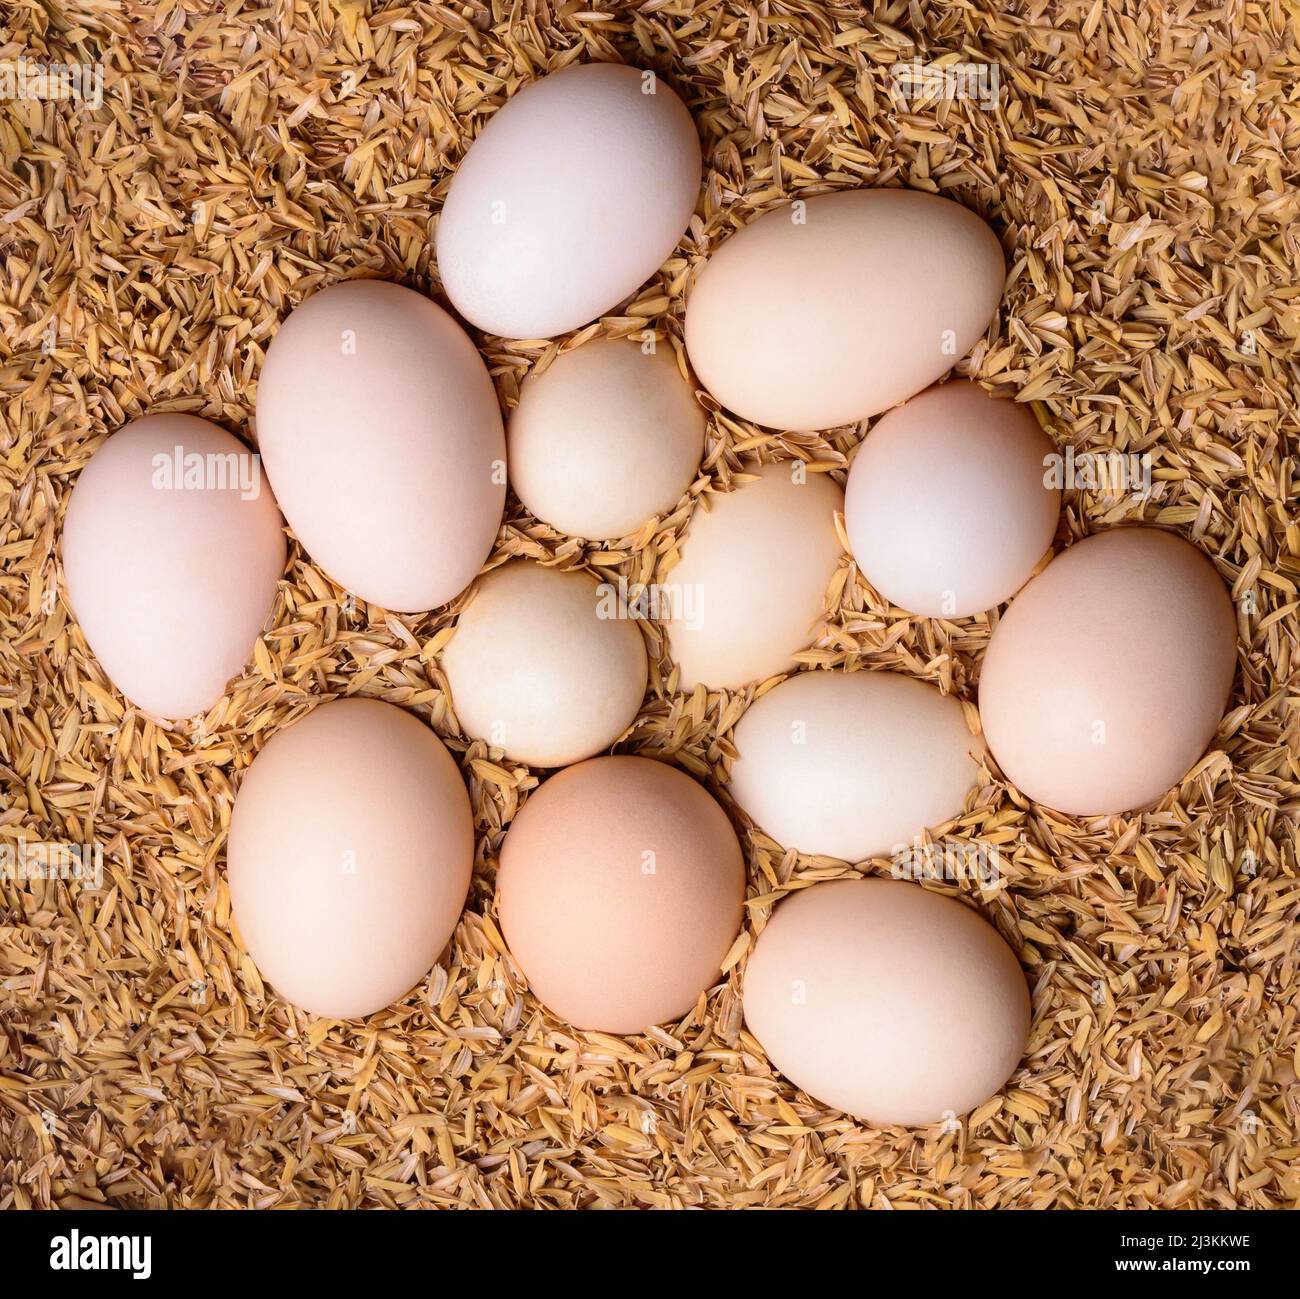 oeufs de poulet fertiles sur les graines de riz paddy husk, pour maintenir les oeufs au chaud jusqu'à ce qu'ils soient éclos par une poule naturellement dans la campagne, pris d'en haut Banque D'Images